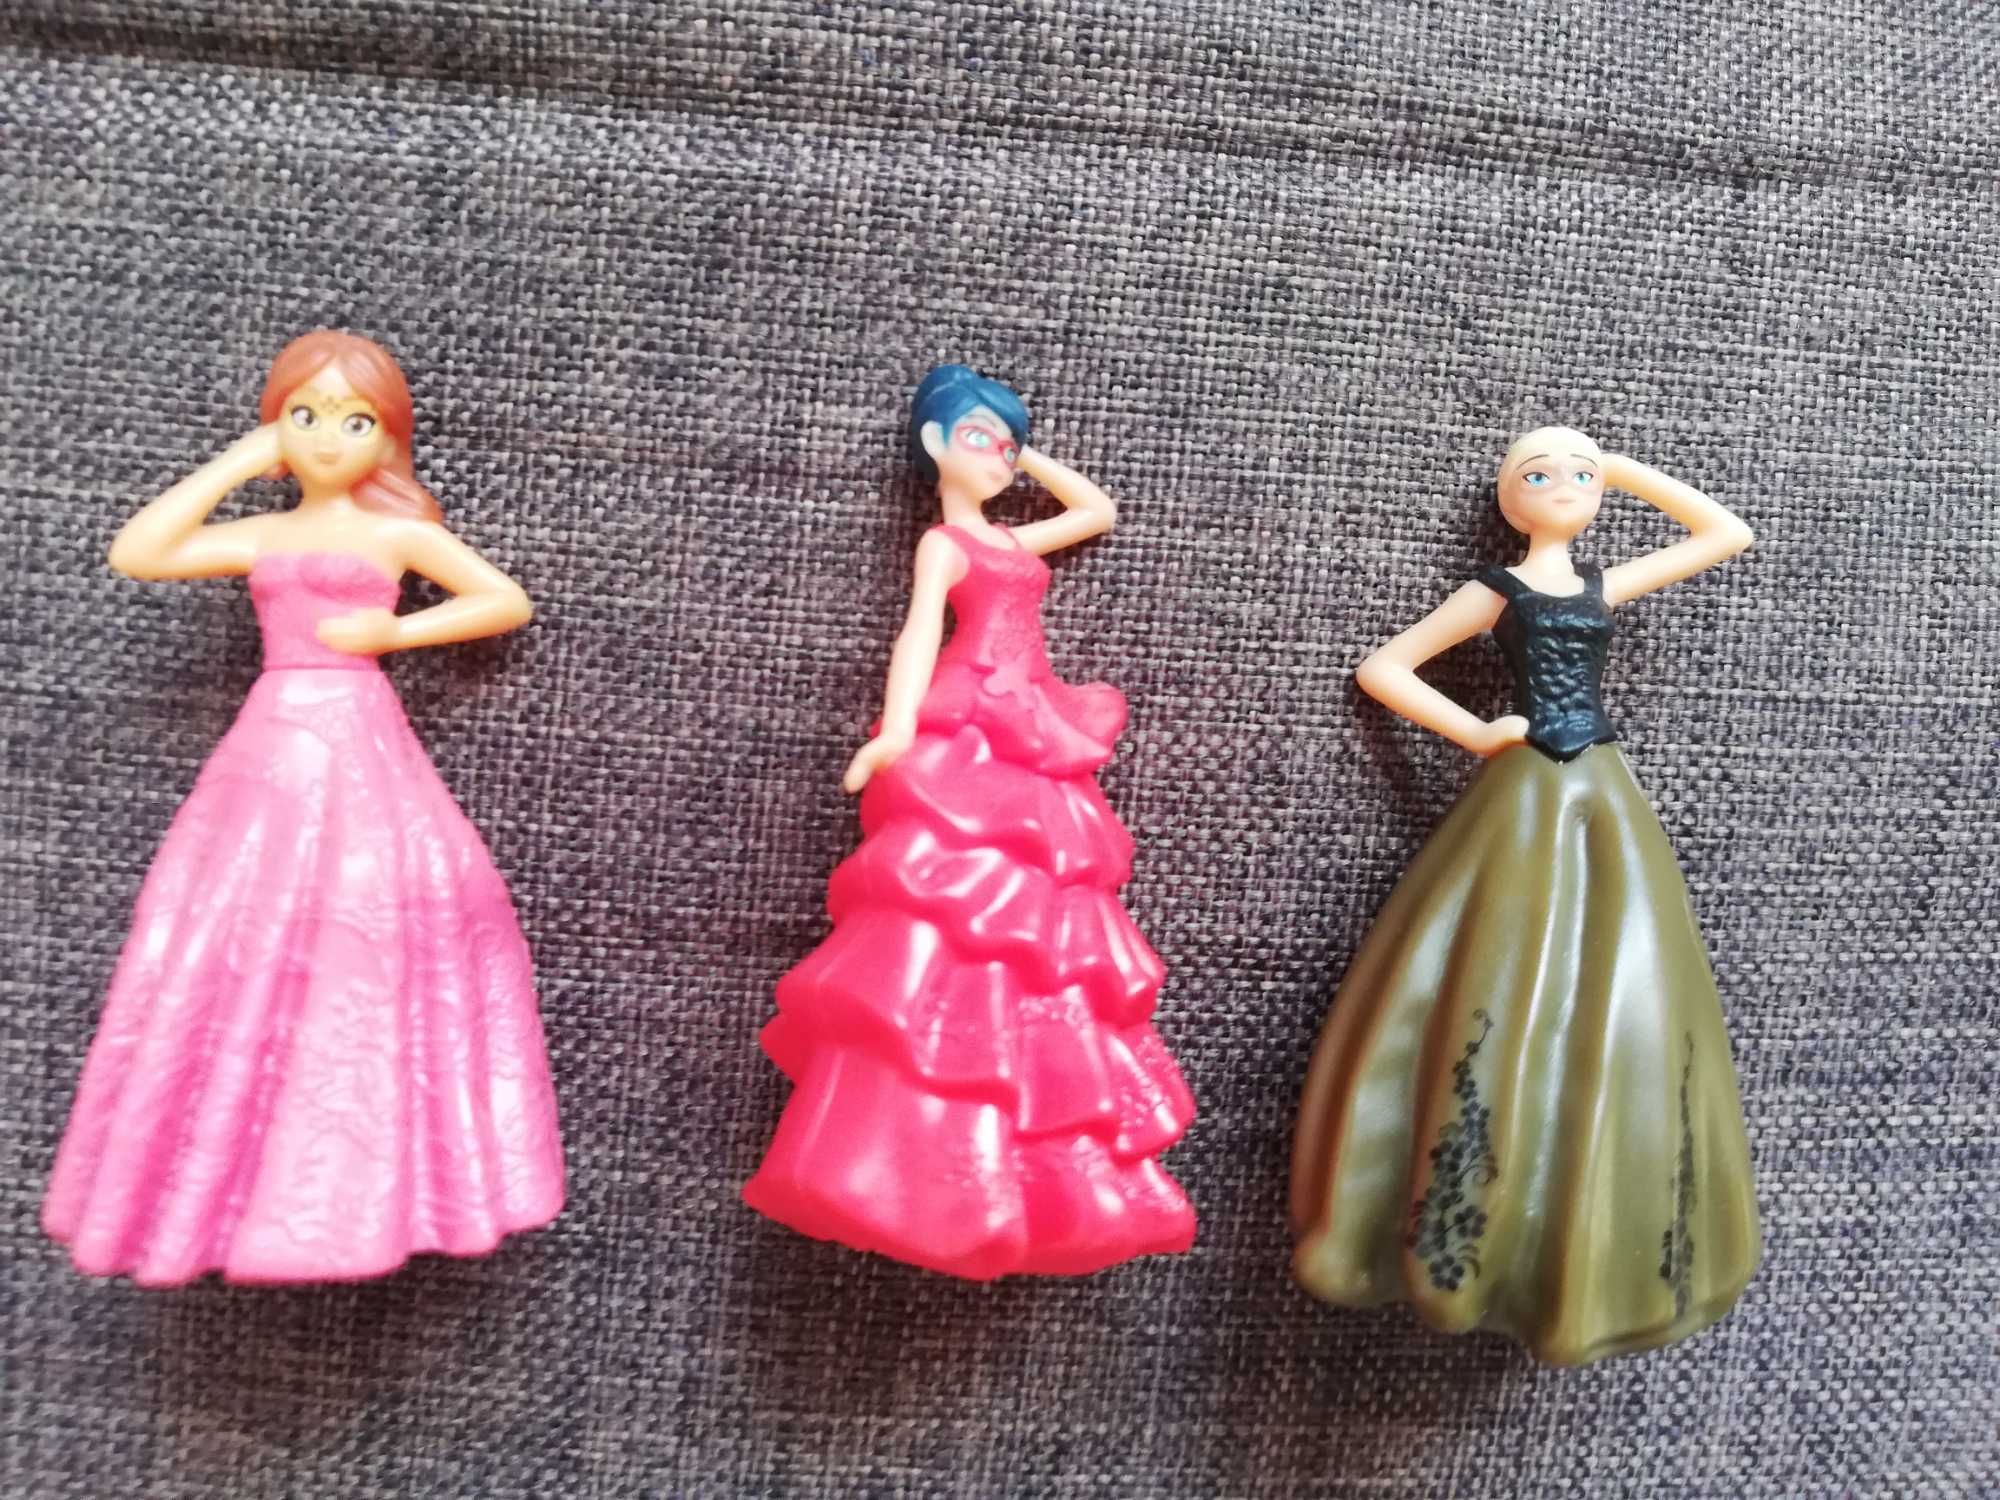 Figurine Disney Princess - Kinder